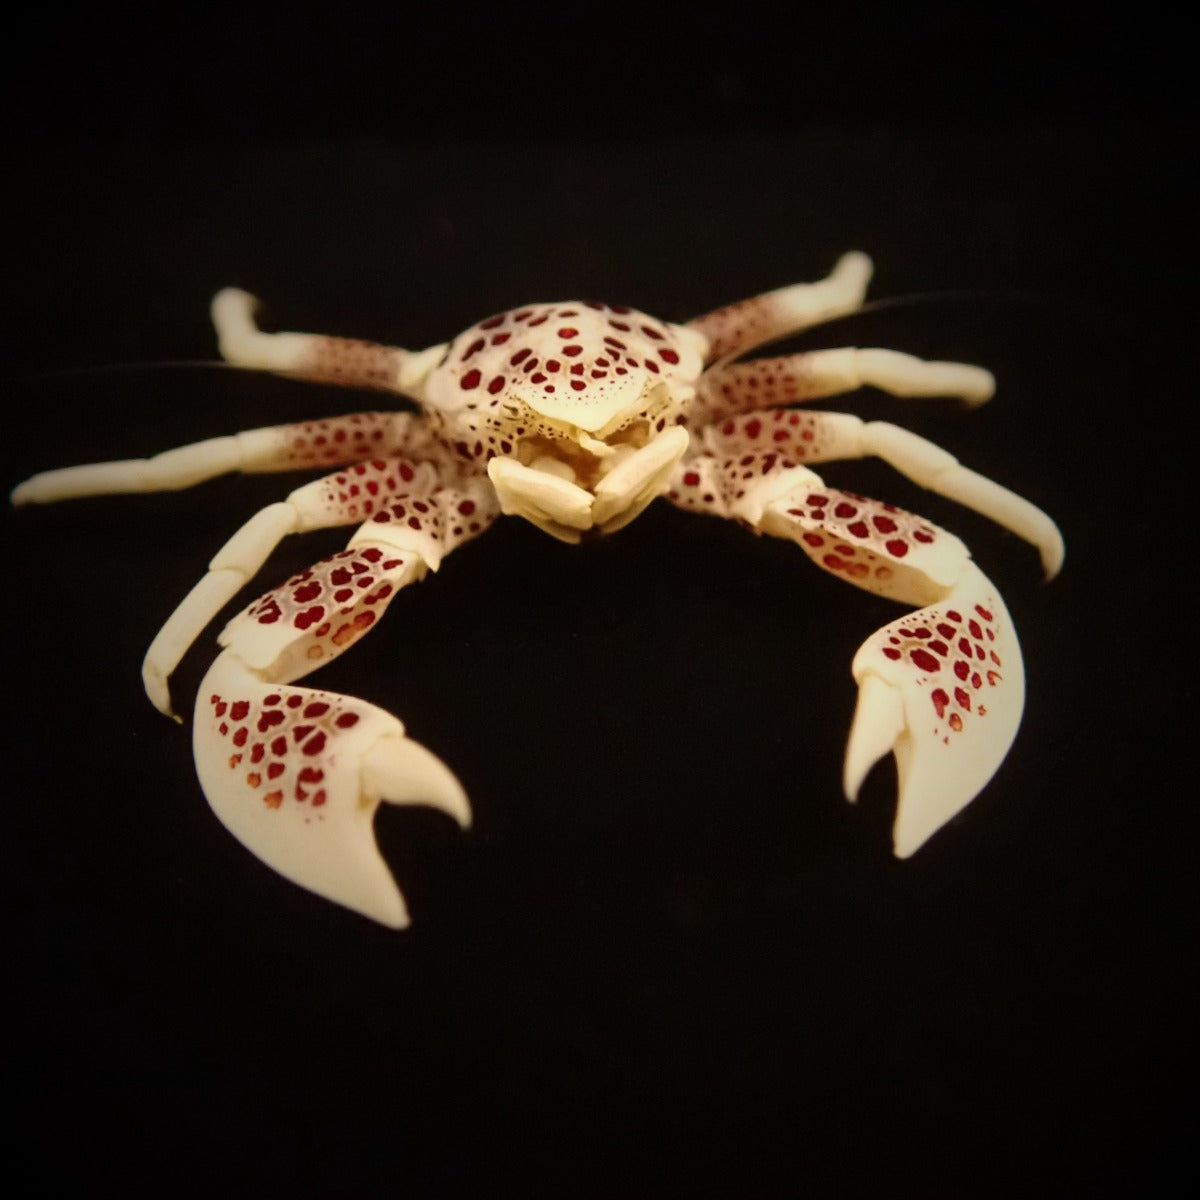 Neopetrolisthes ohshimai - Porcelain anemone crab